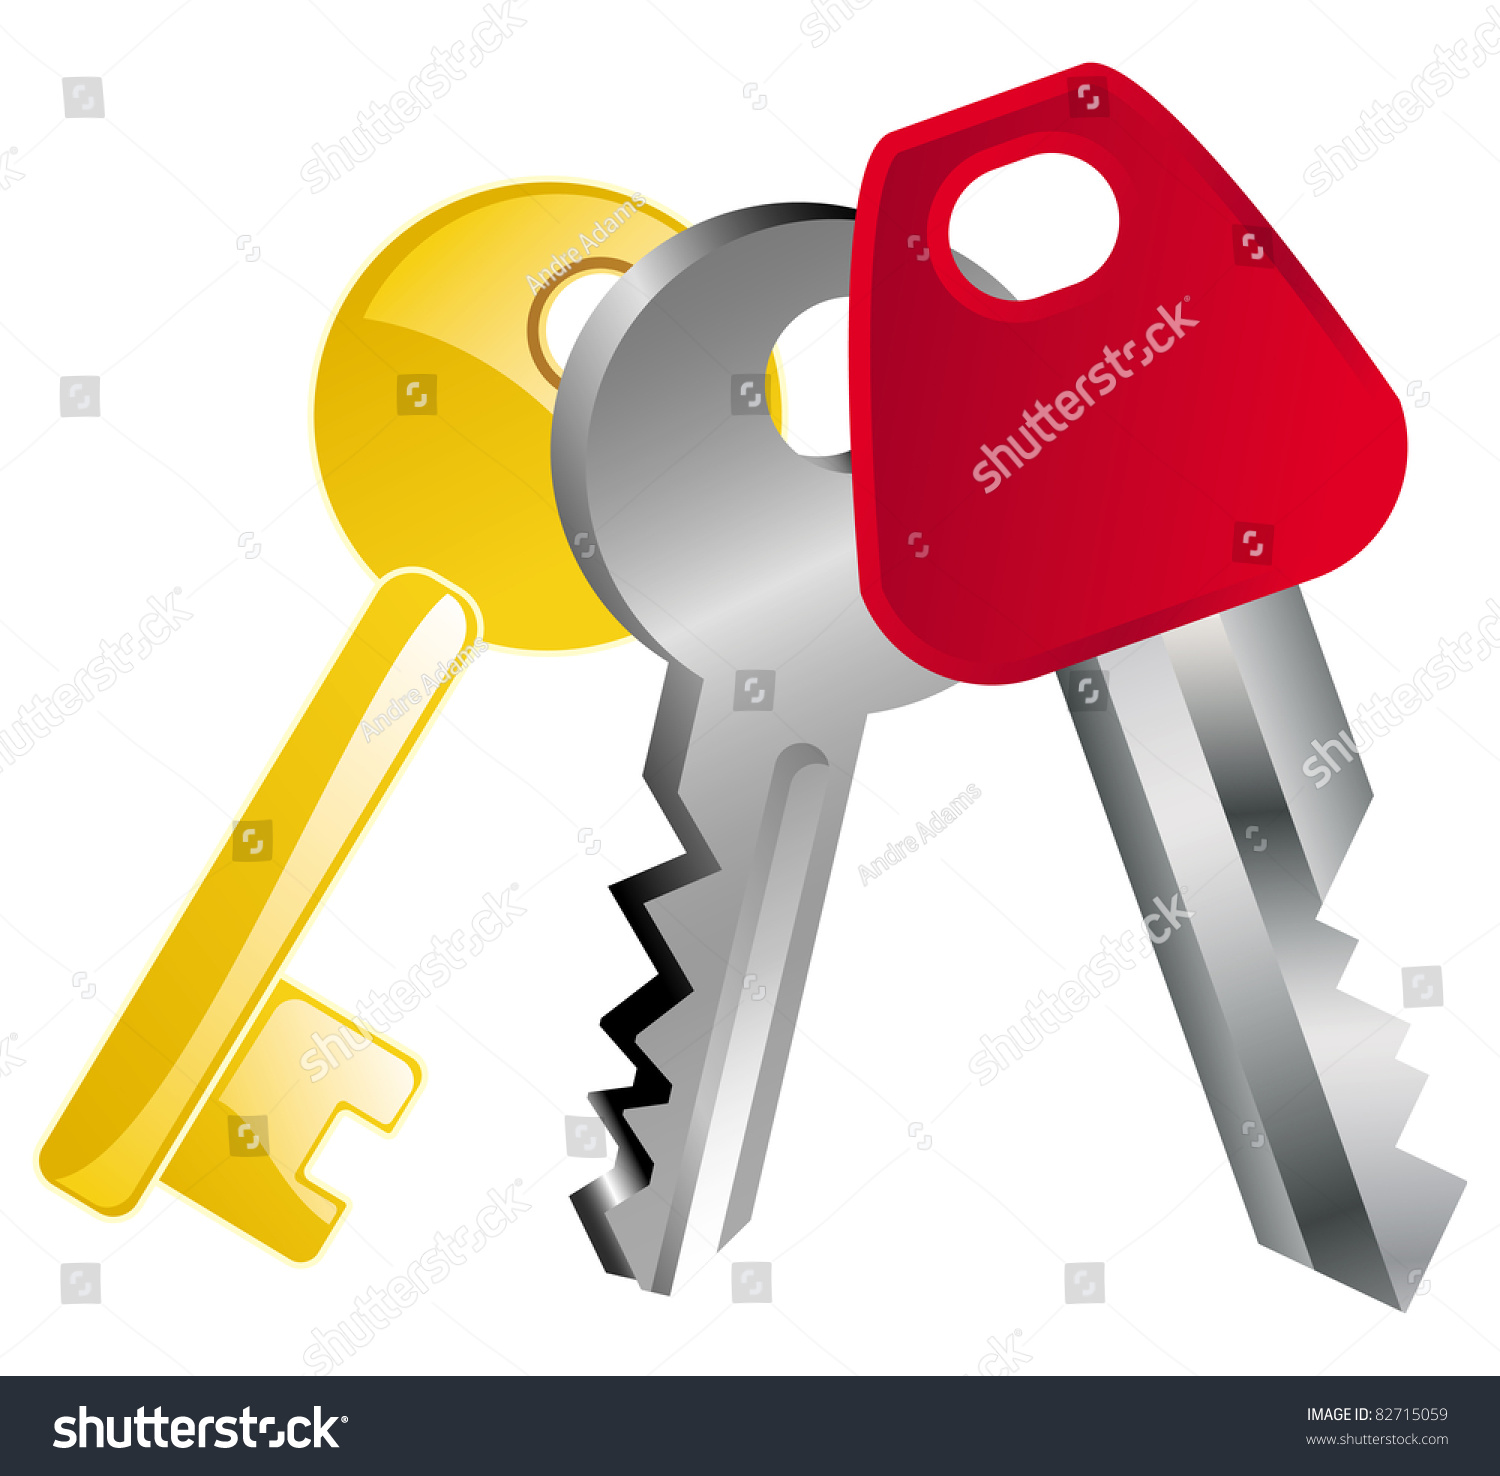 Cartoon Vector Illustration Of A Keys Collection - 82715059 : Shutterstock